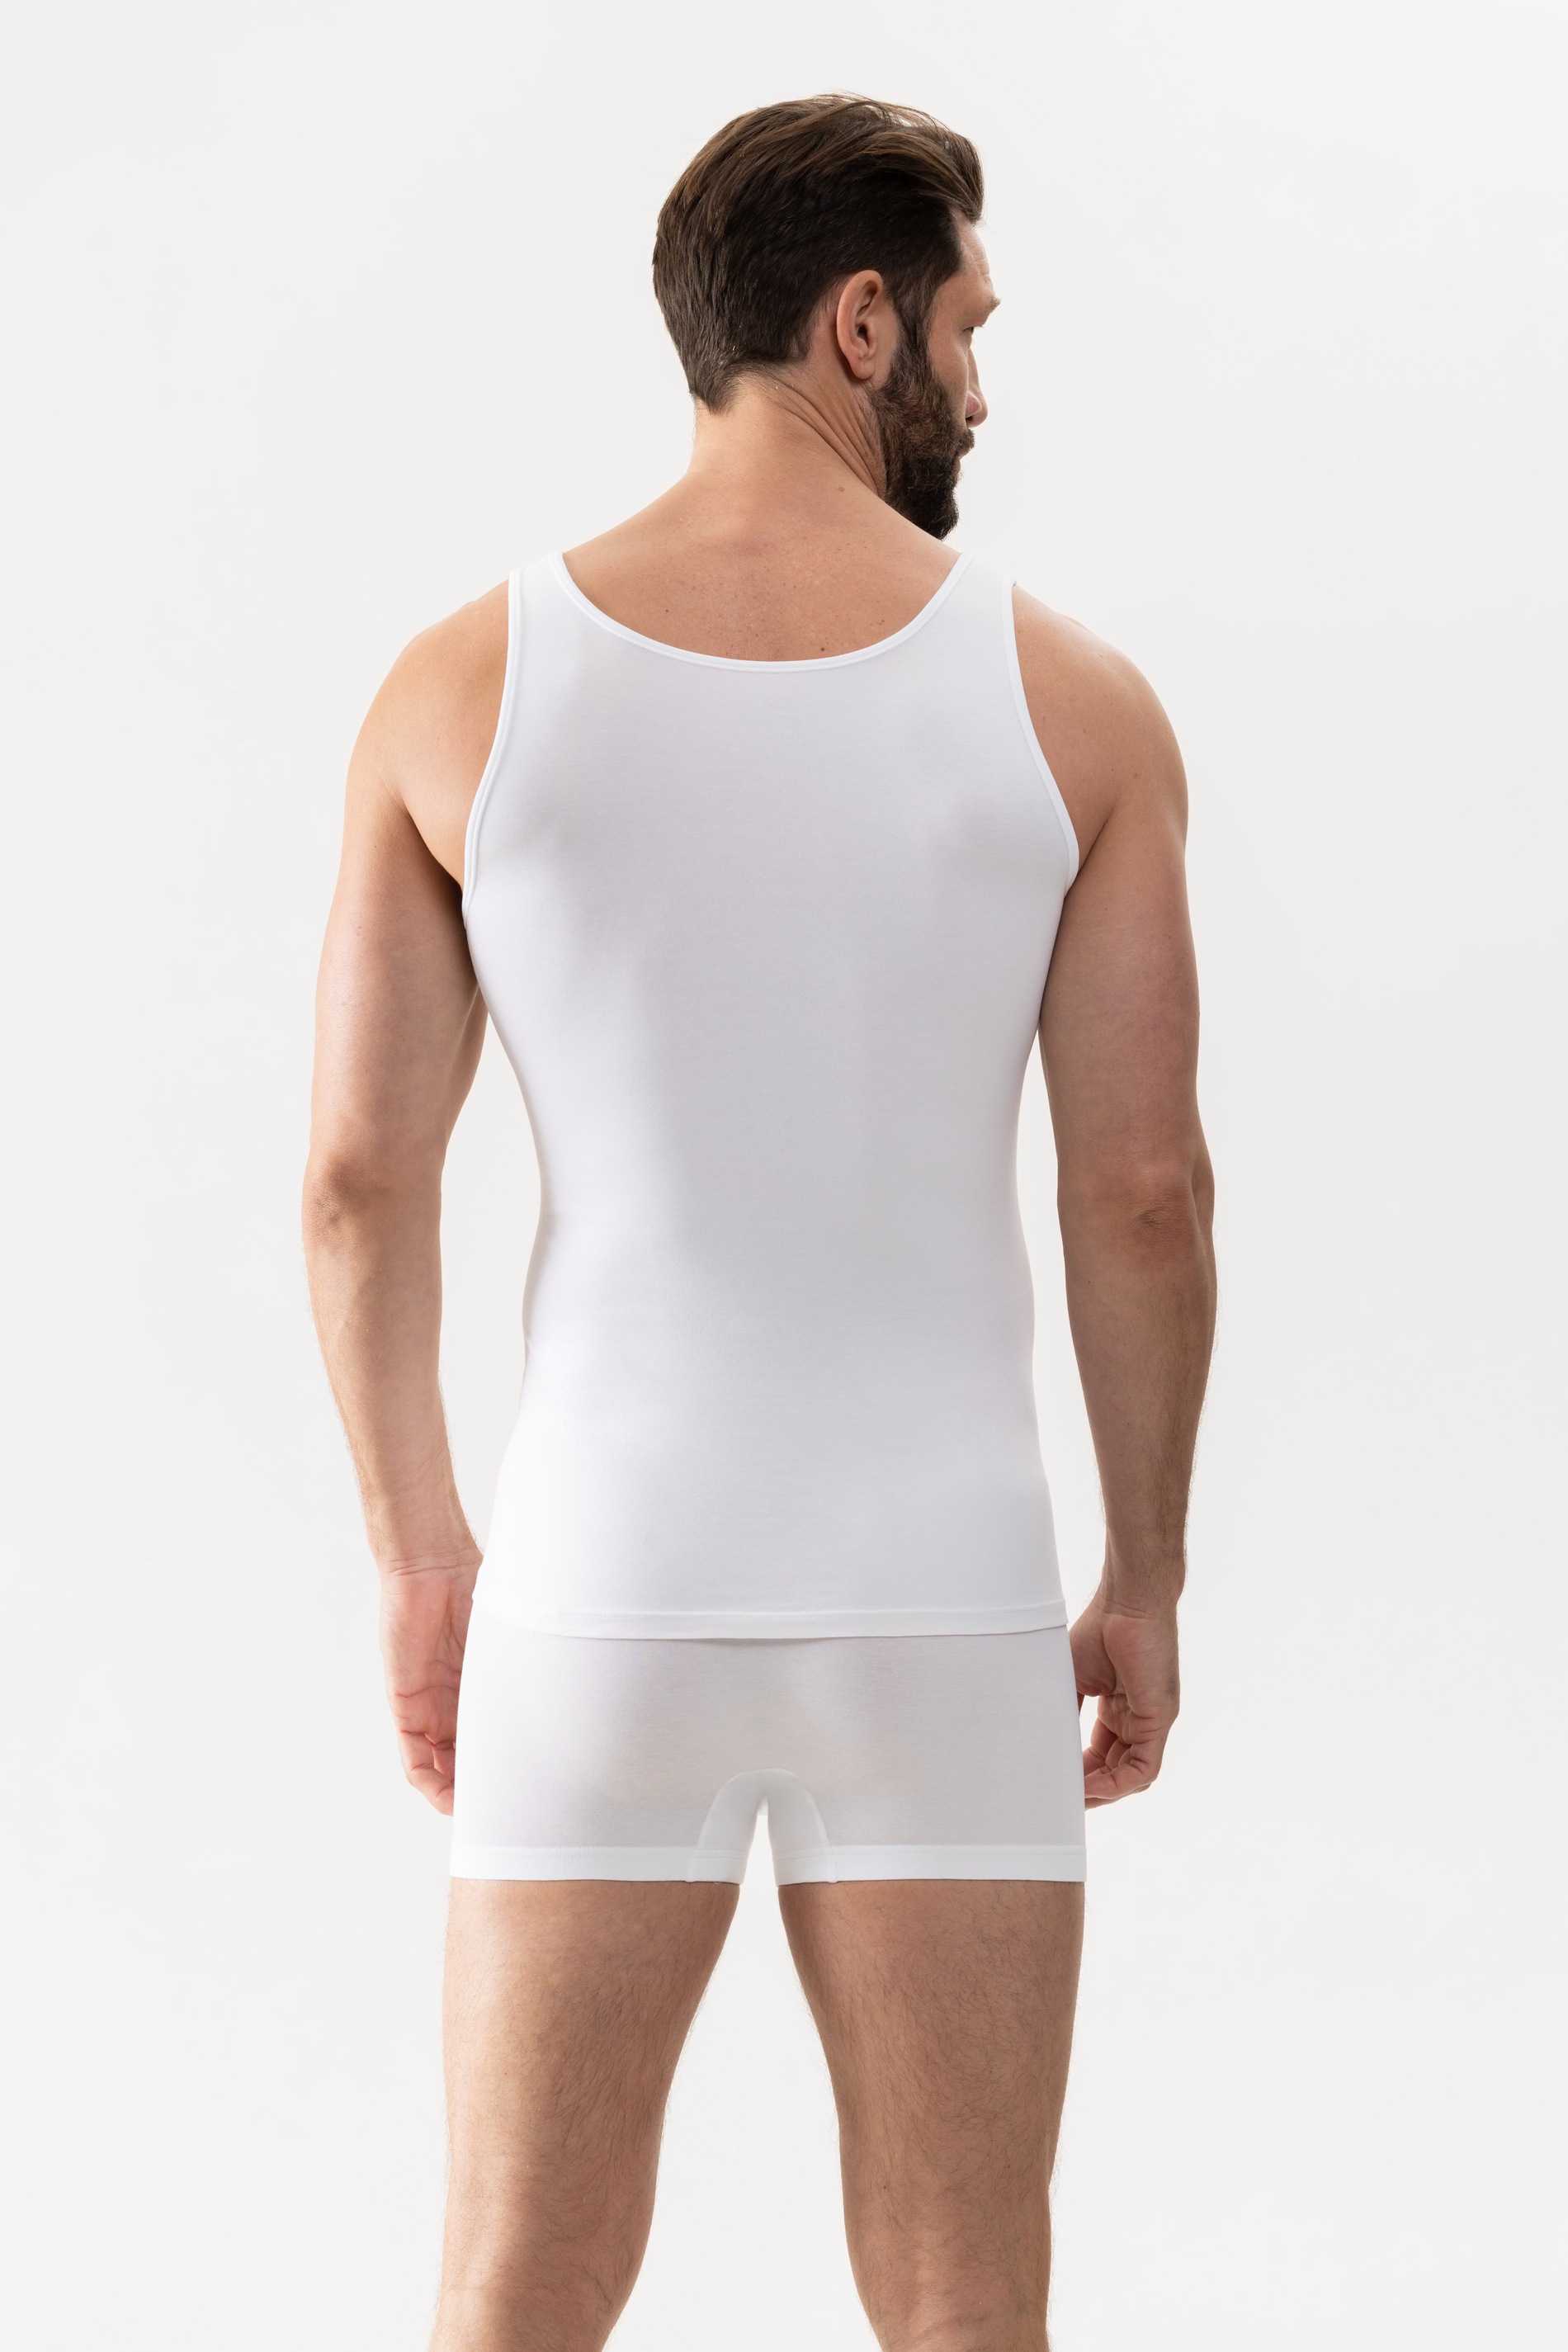 Athletic shirt Wit Serie Software Achteraanzicht | mey®